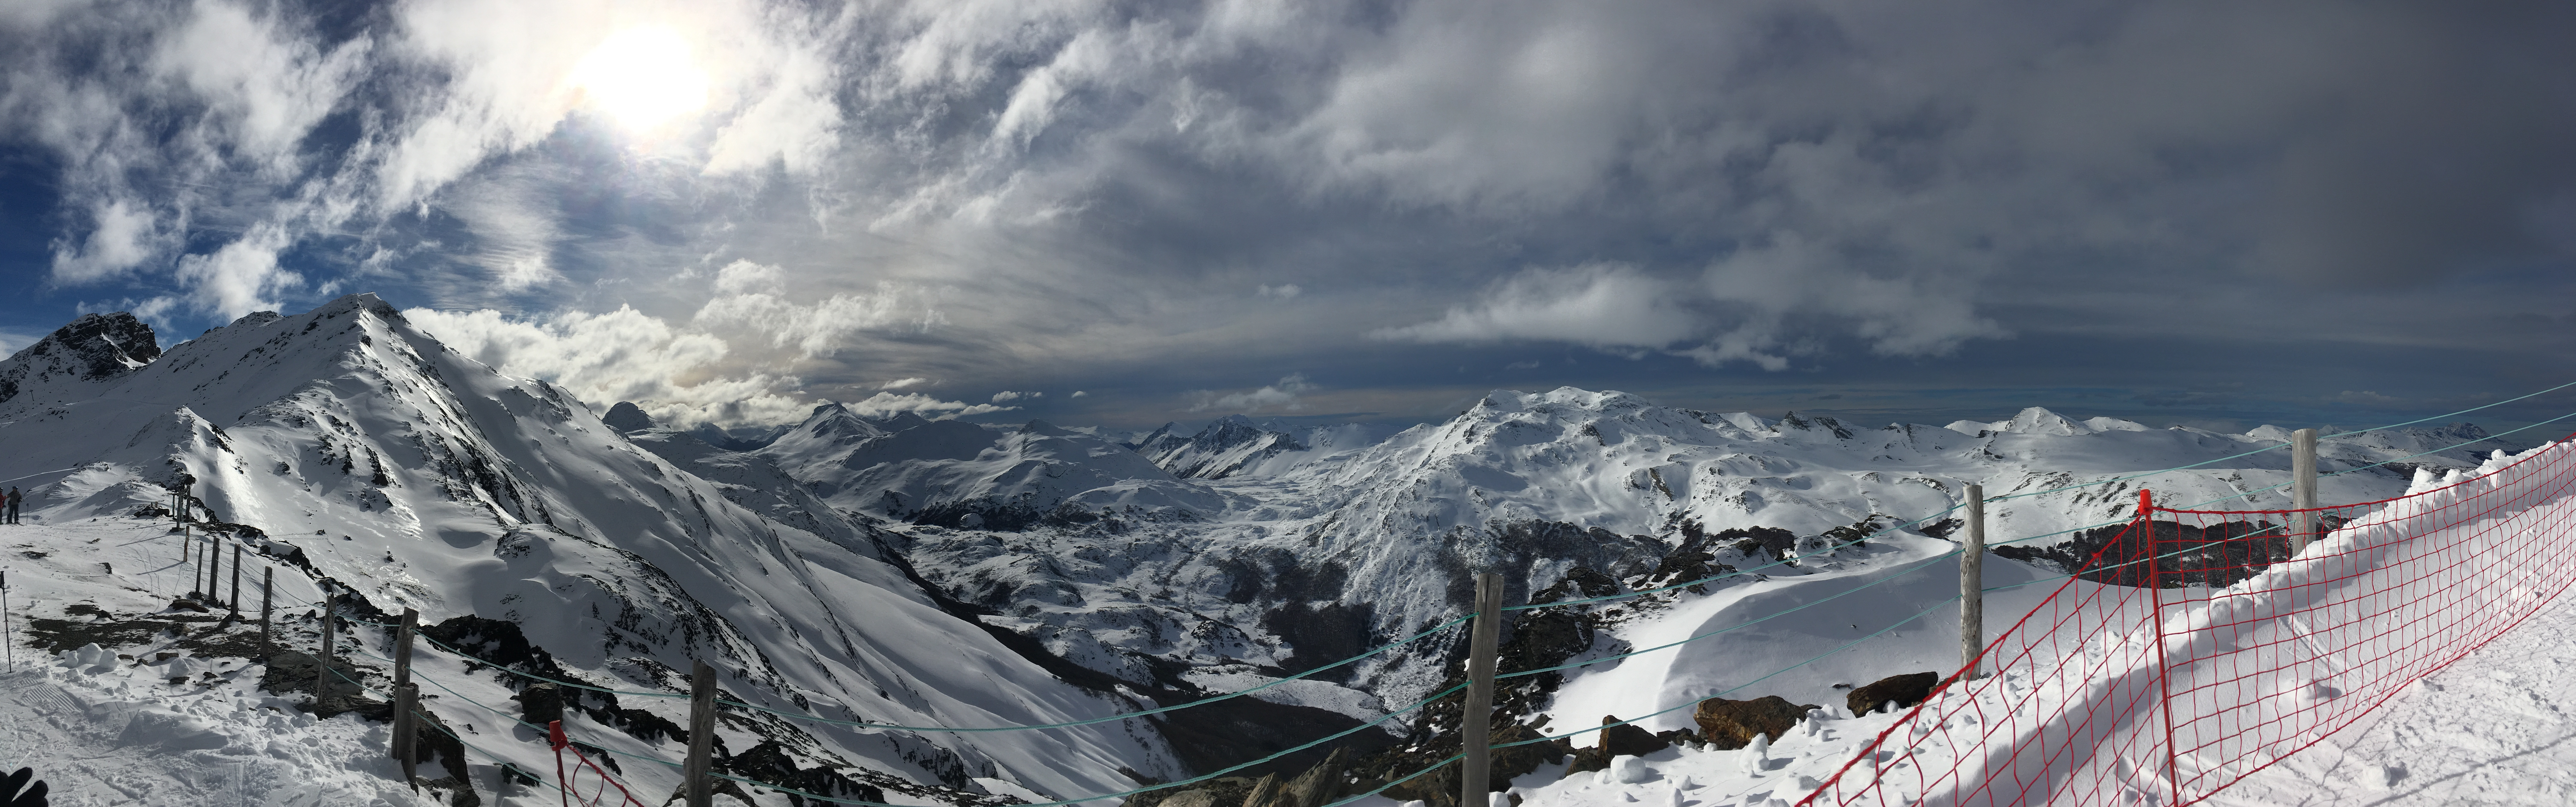 sol y nieve, Cerro Castor